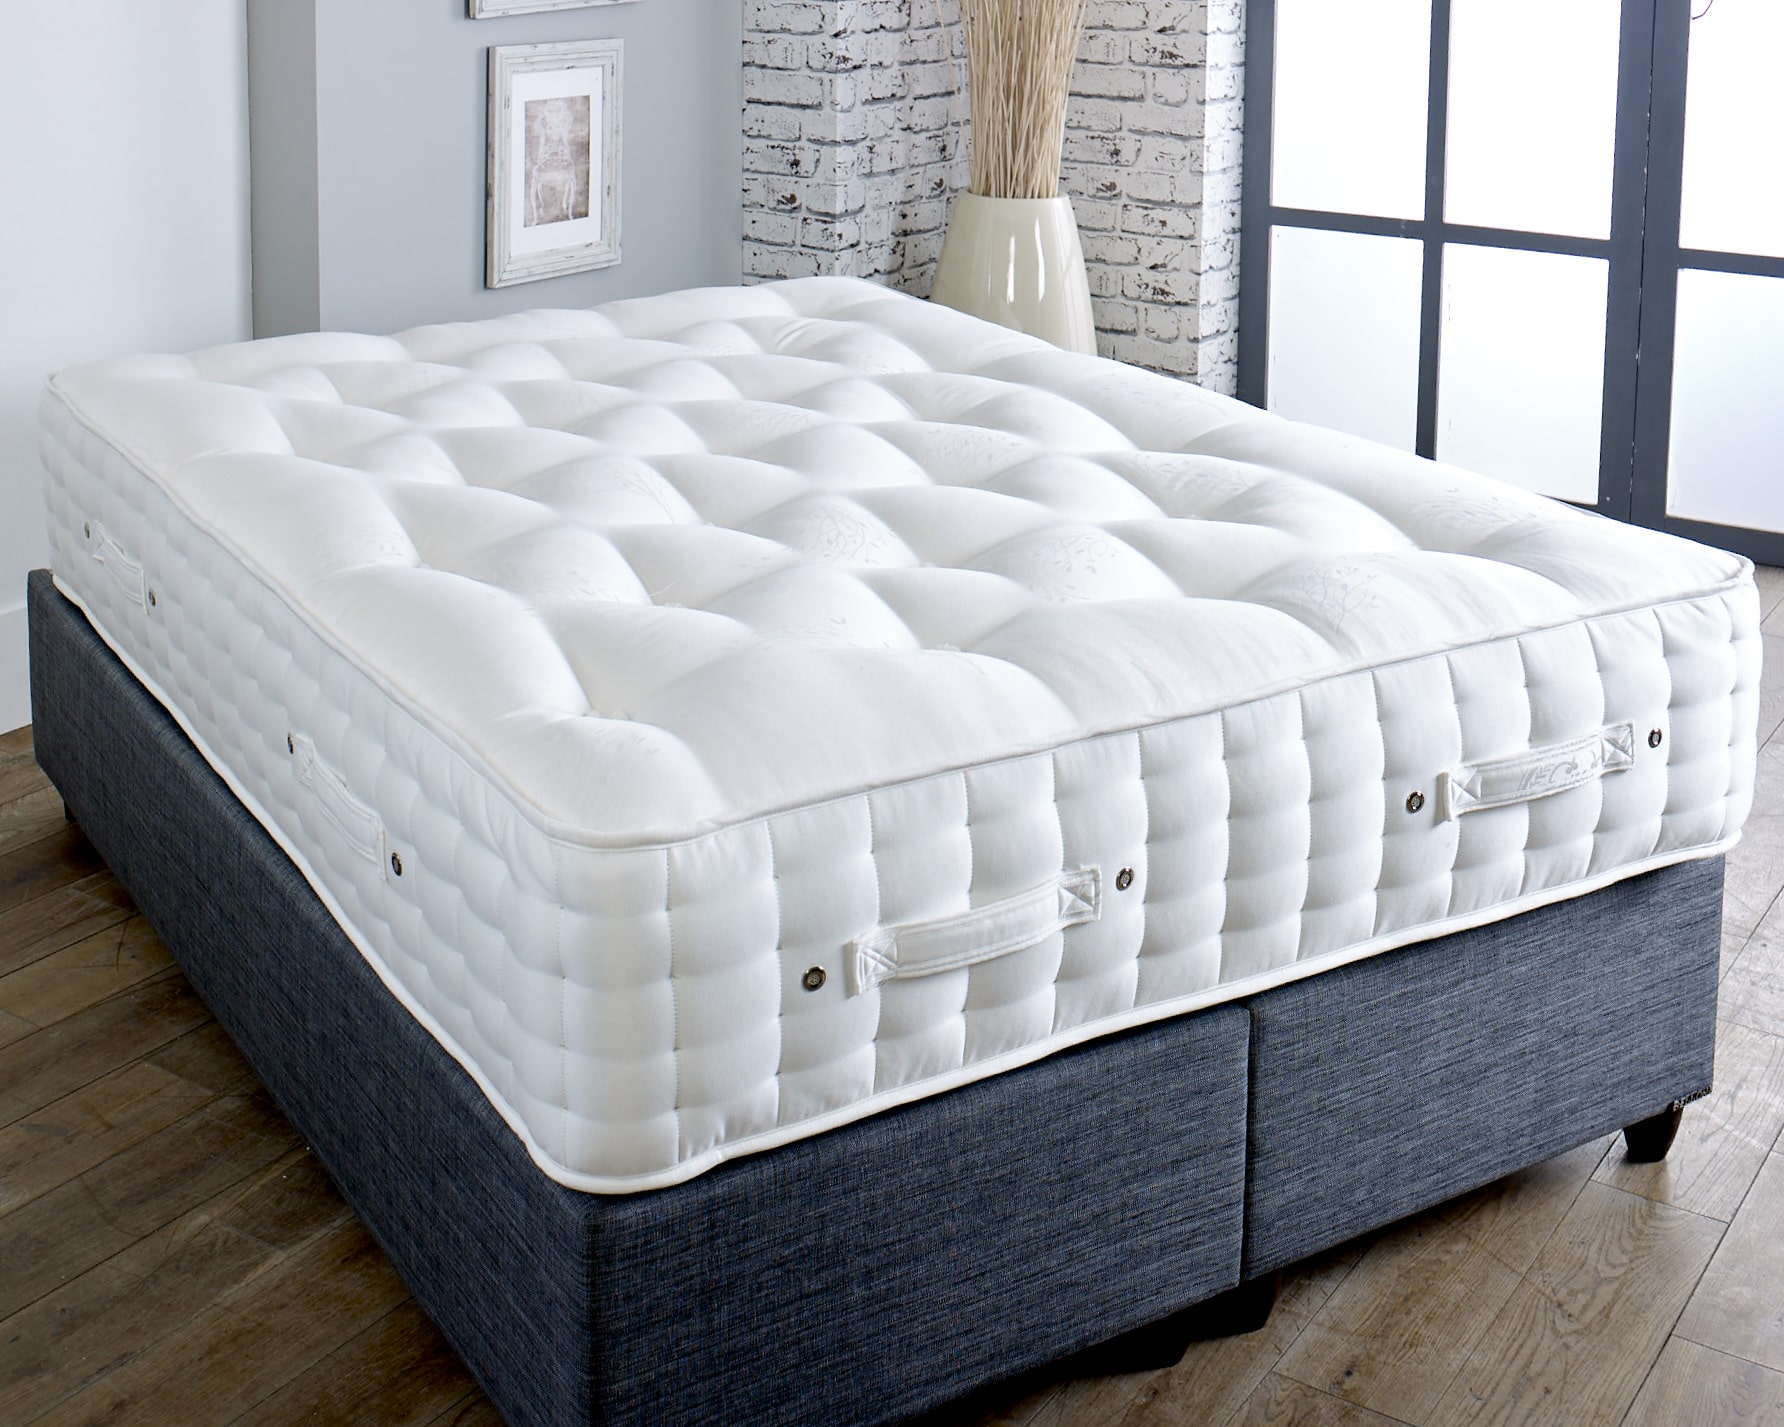 3000 sprung double mattress sale